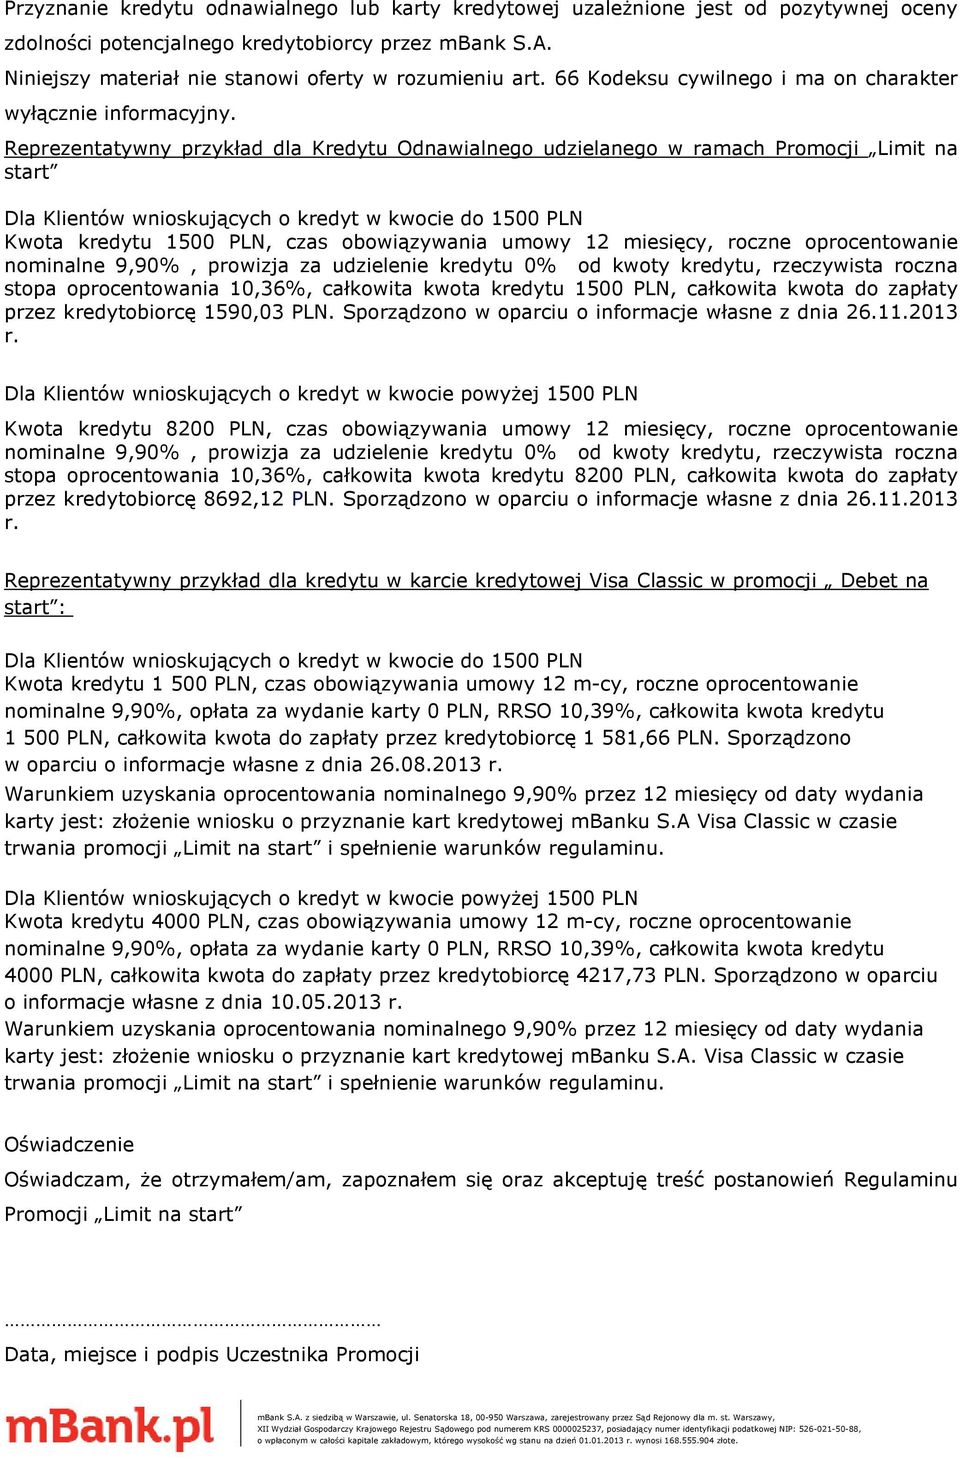 Reprezentatywny przykład dla Kredytu Odnawialnego udzielanego w ramach Promocji Limit na start Dla Klientów wnioskujących o kredyt w kwocie do 1500 PLN Kwota kredytu 1500 PLN, czas obowiązywania